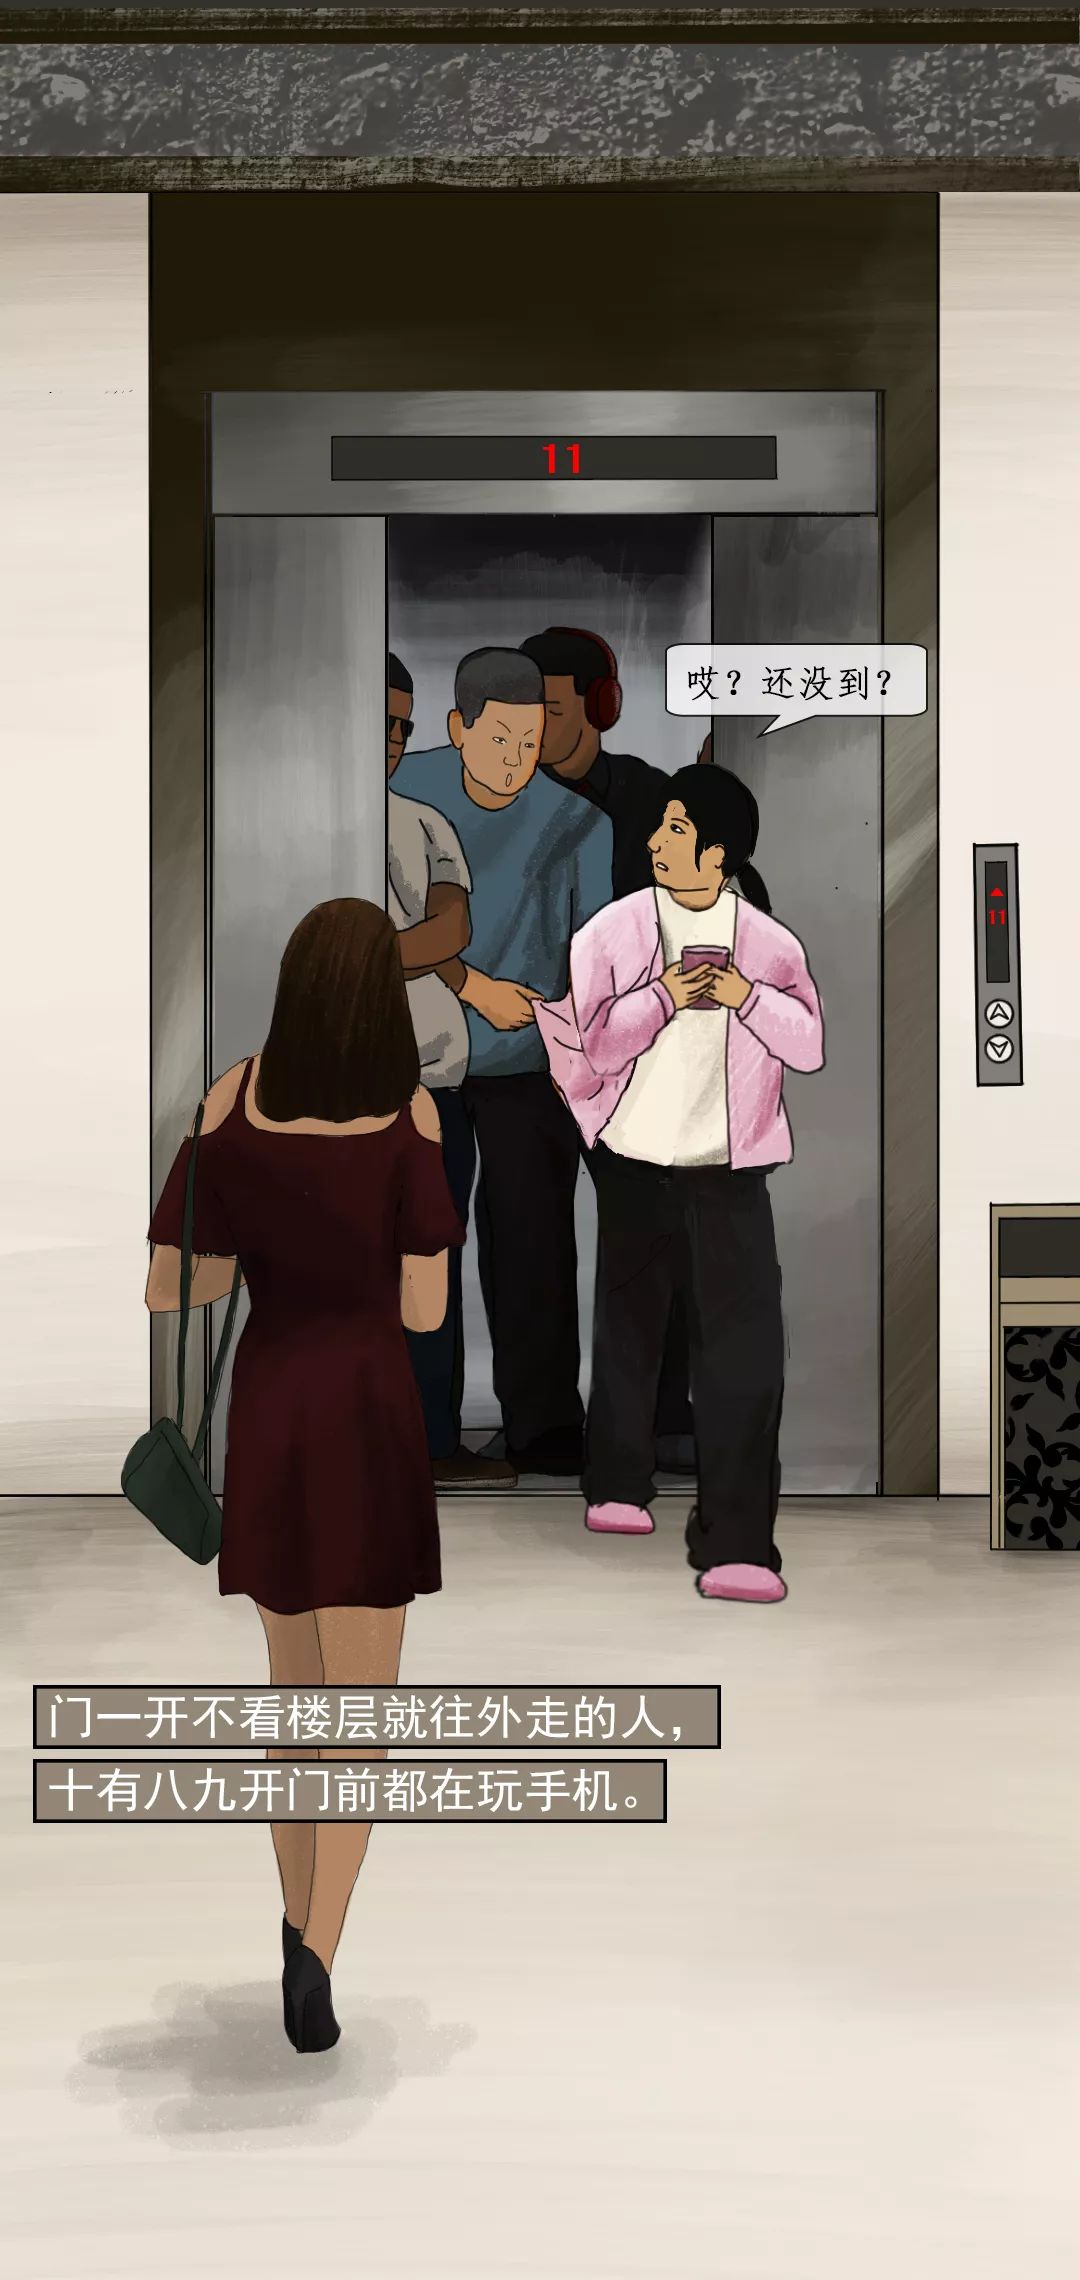 电梯一定程度上已经成为了人们城市生活中的必需品,每天挤电梯也成为